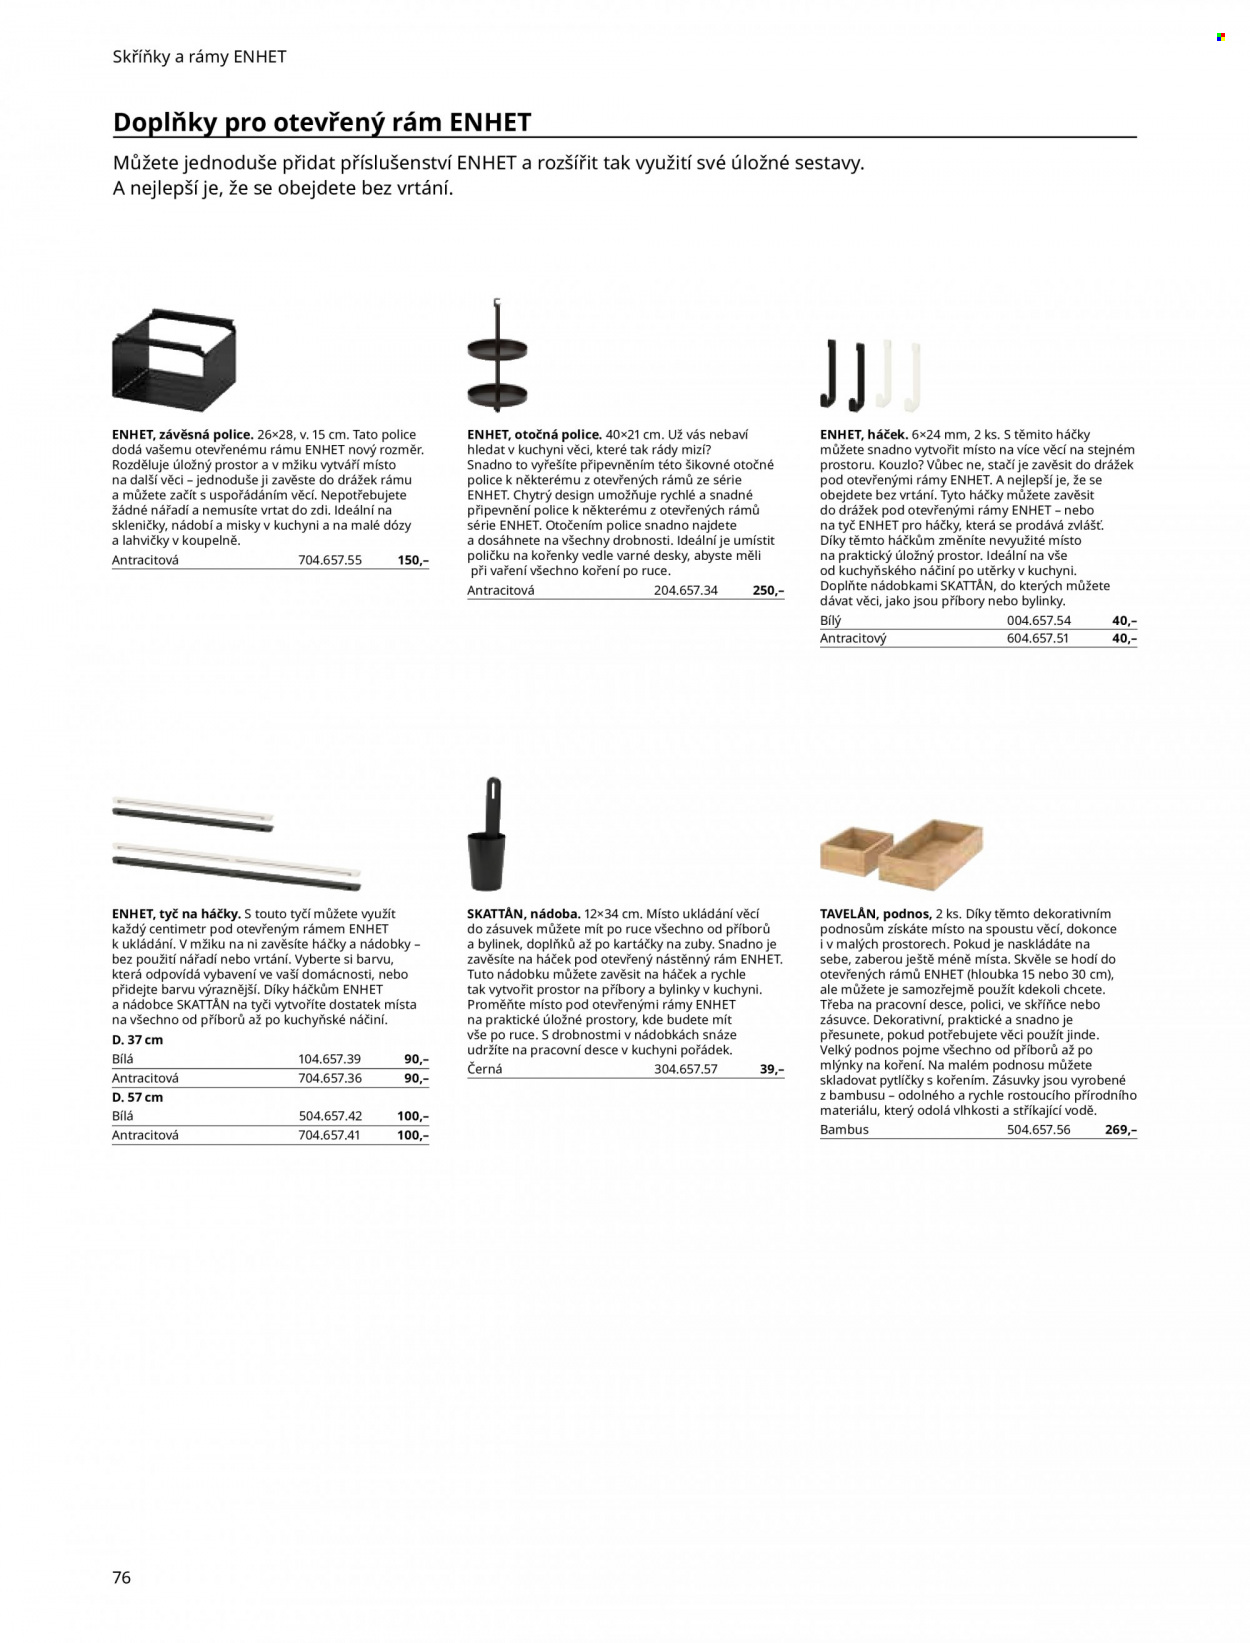 Leták IKEA - Produkty v akci - kuchyňské náčiní, podnos, sklenice, nádobí, miska, dóza, police, utěrka, háček, bylinky, bambus. Strana 76.